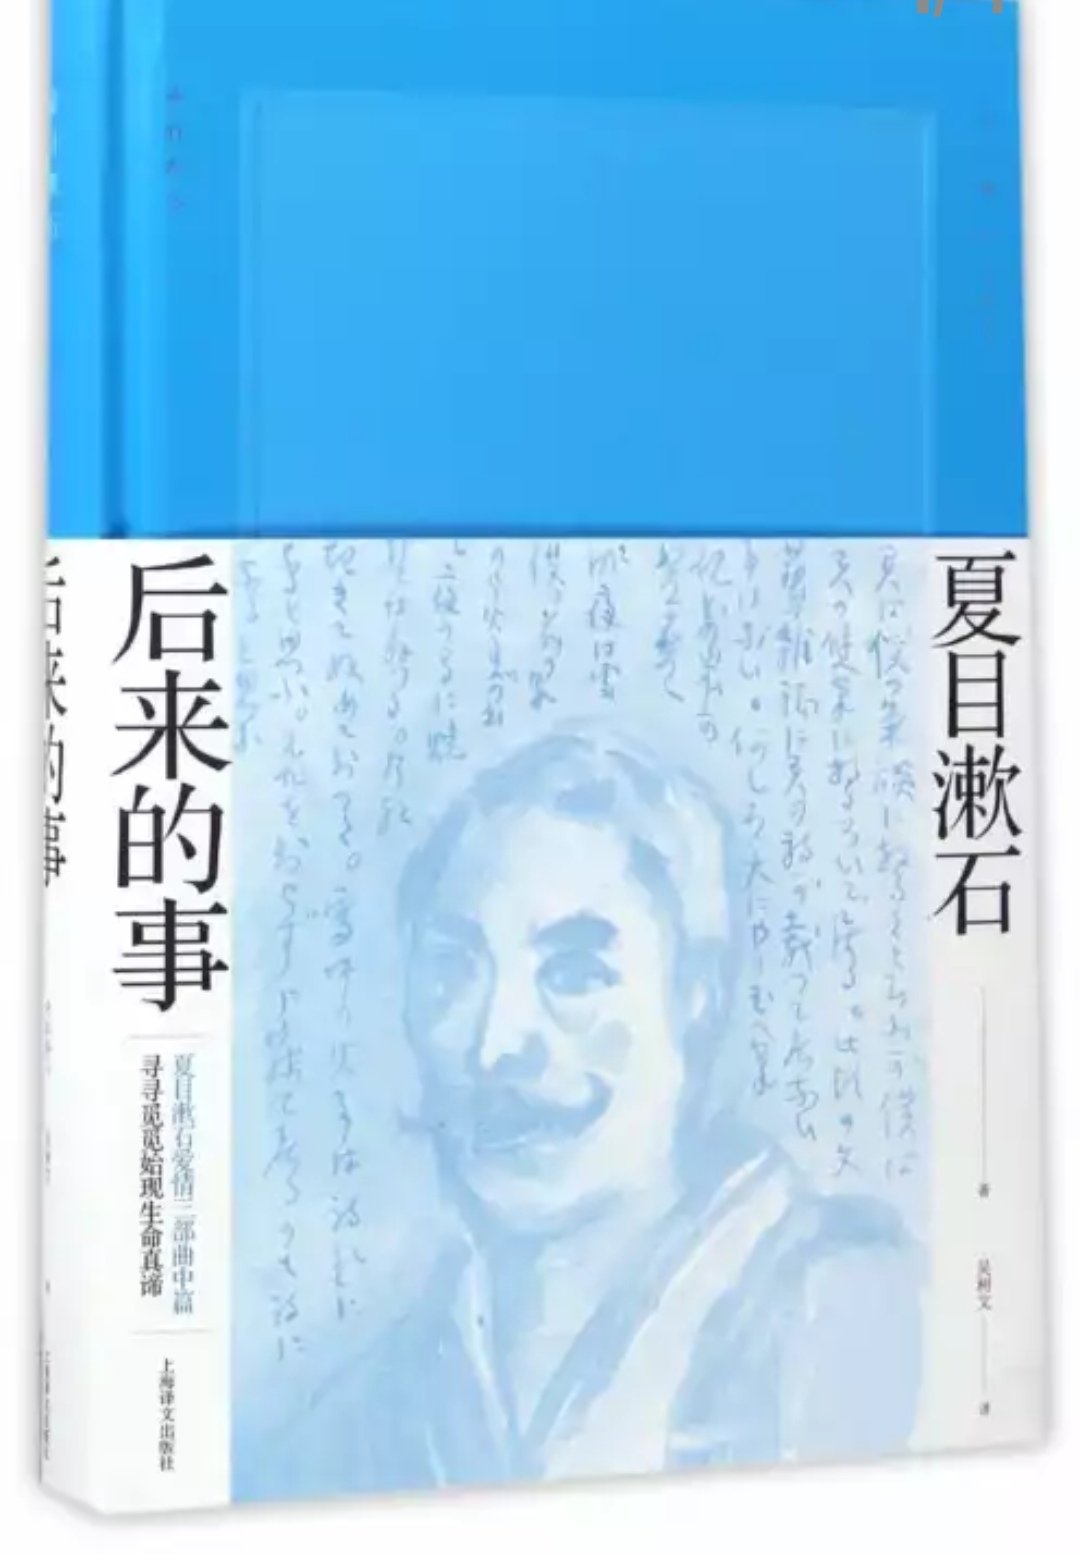 上海译文出版社这一套夏目漱石装帧很不错，颜色从浅蓝到深蓝，可惜的是，没有把少爷出了。还是有点遗憾。大促很好。